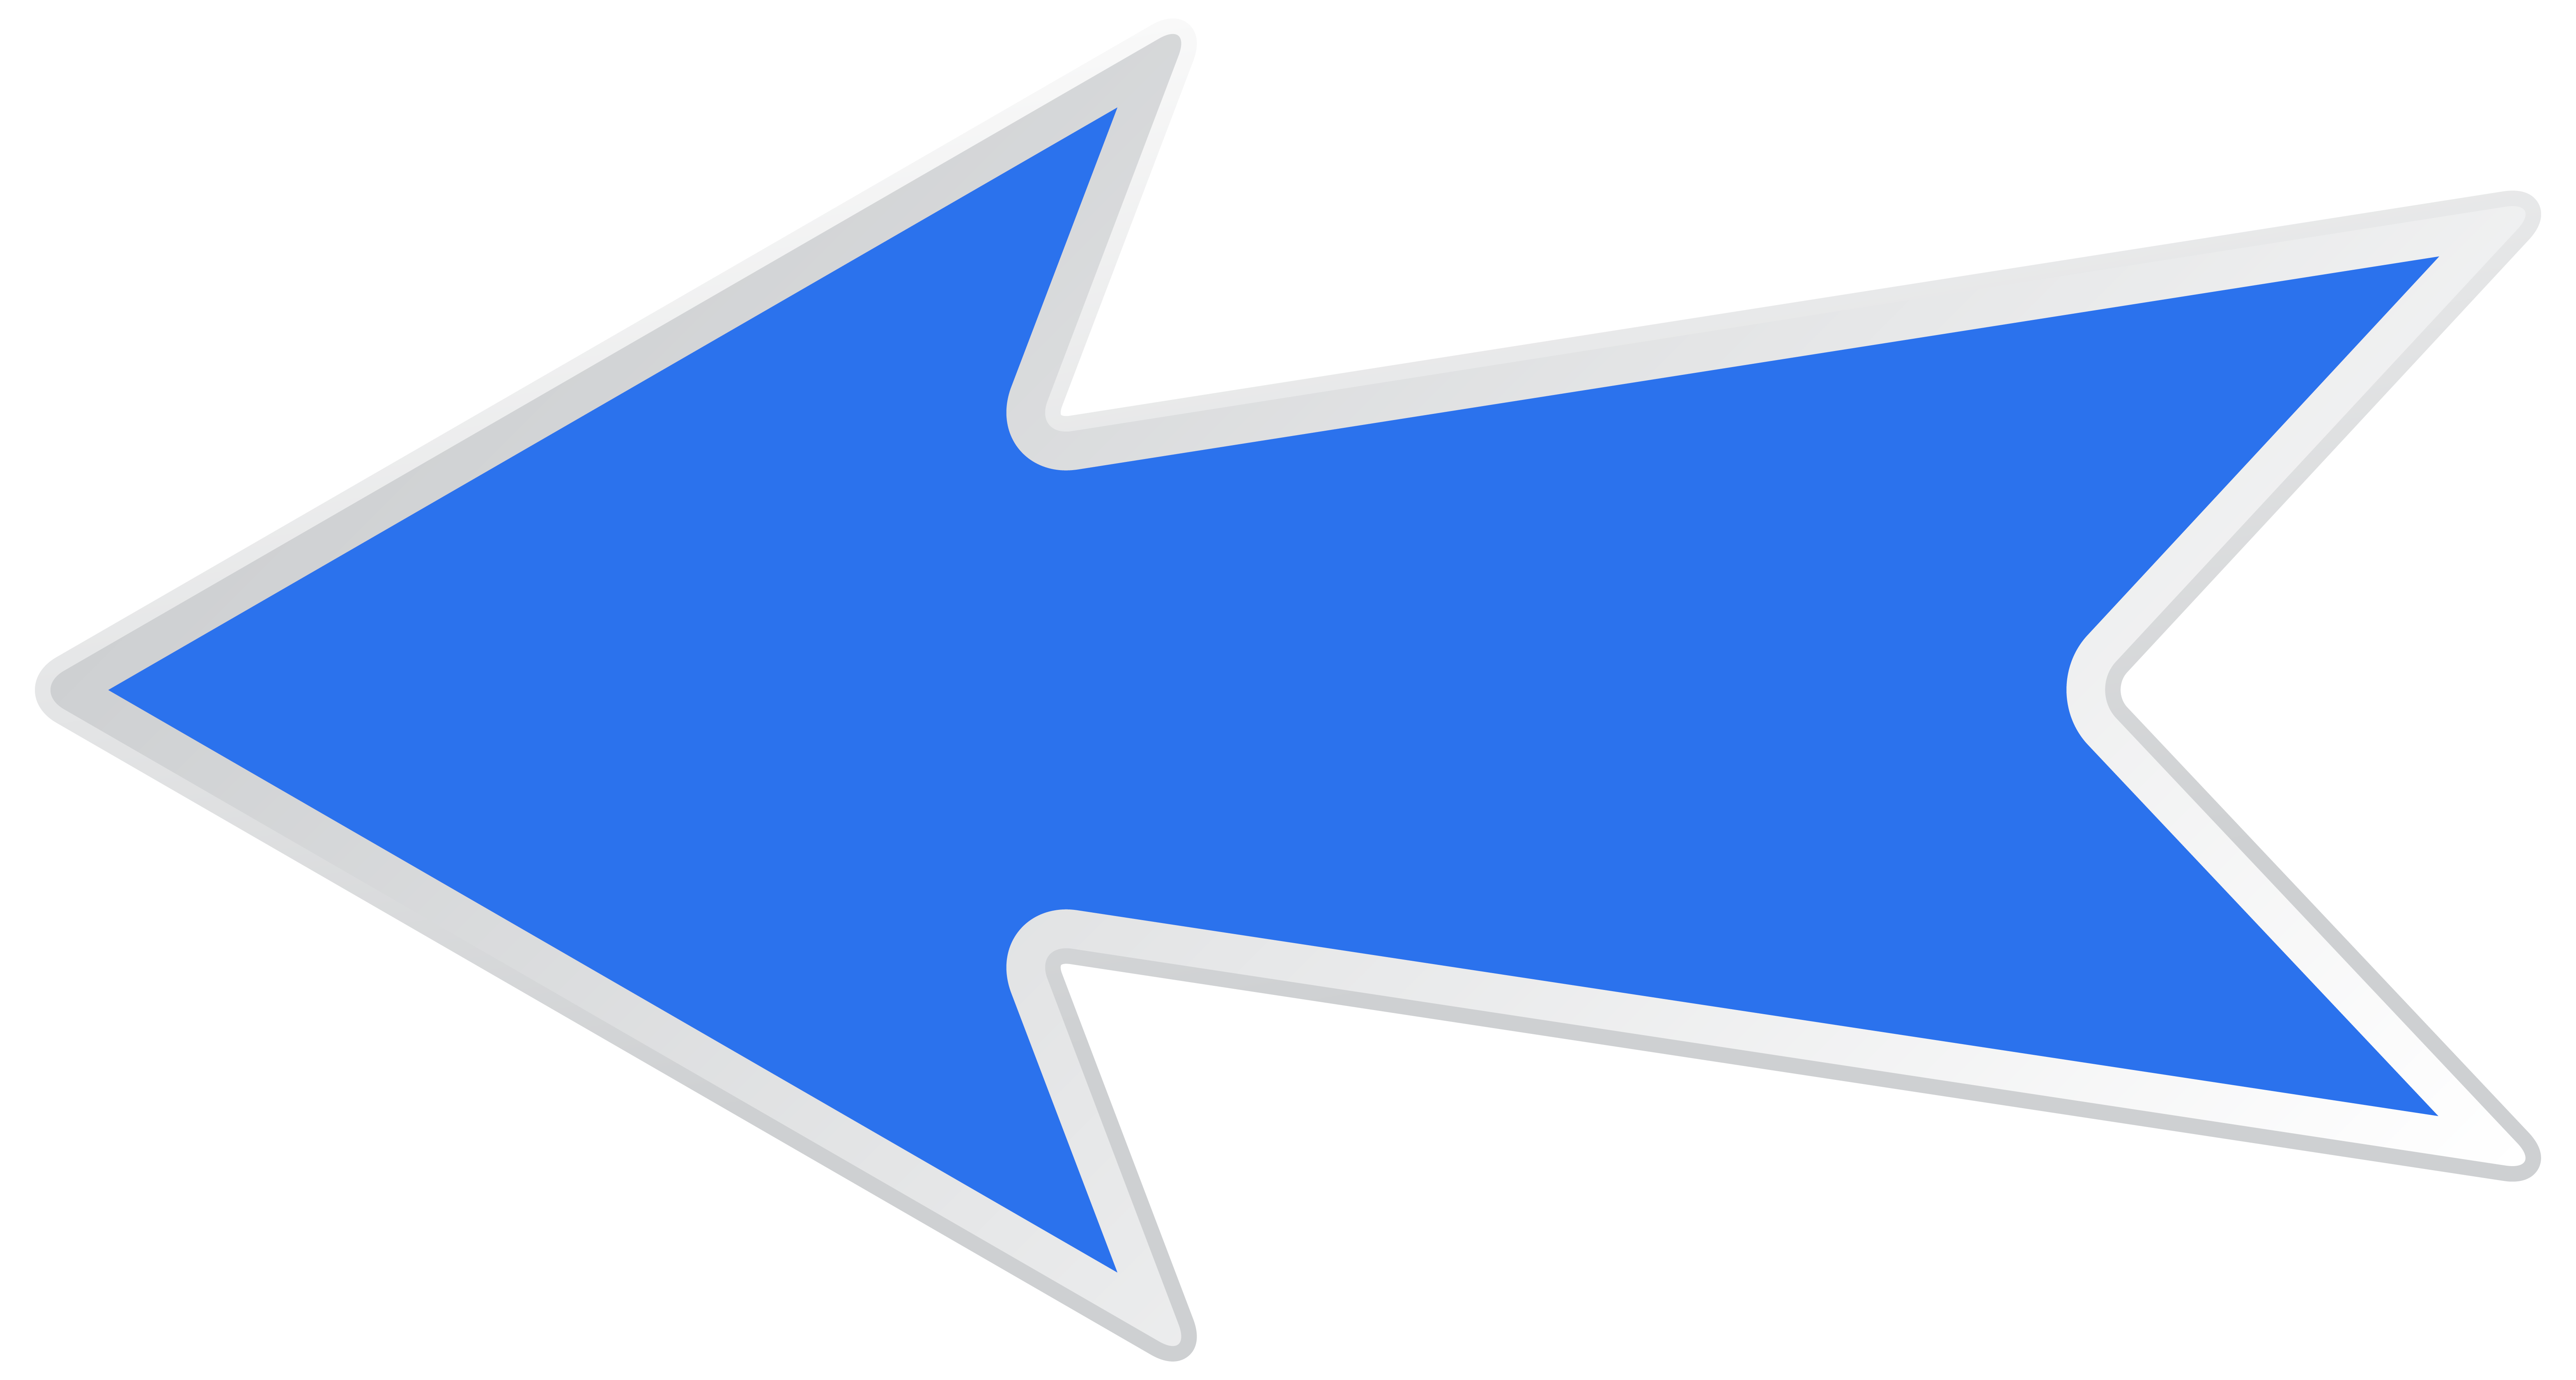 Blue Left Arrow PNG Clip Art Image